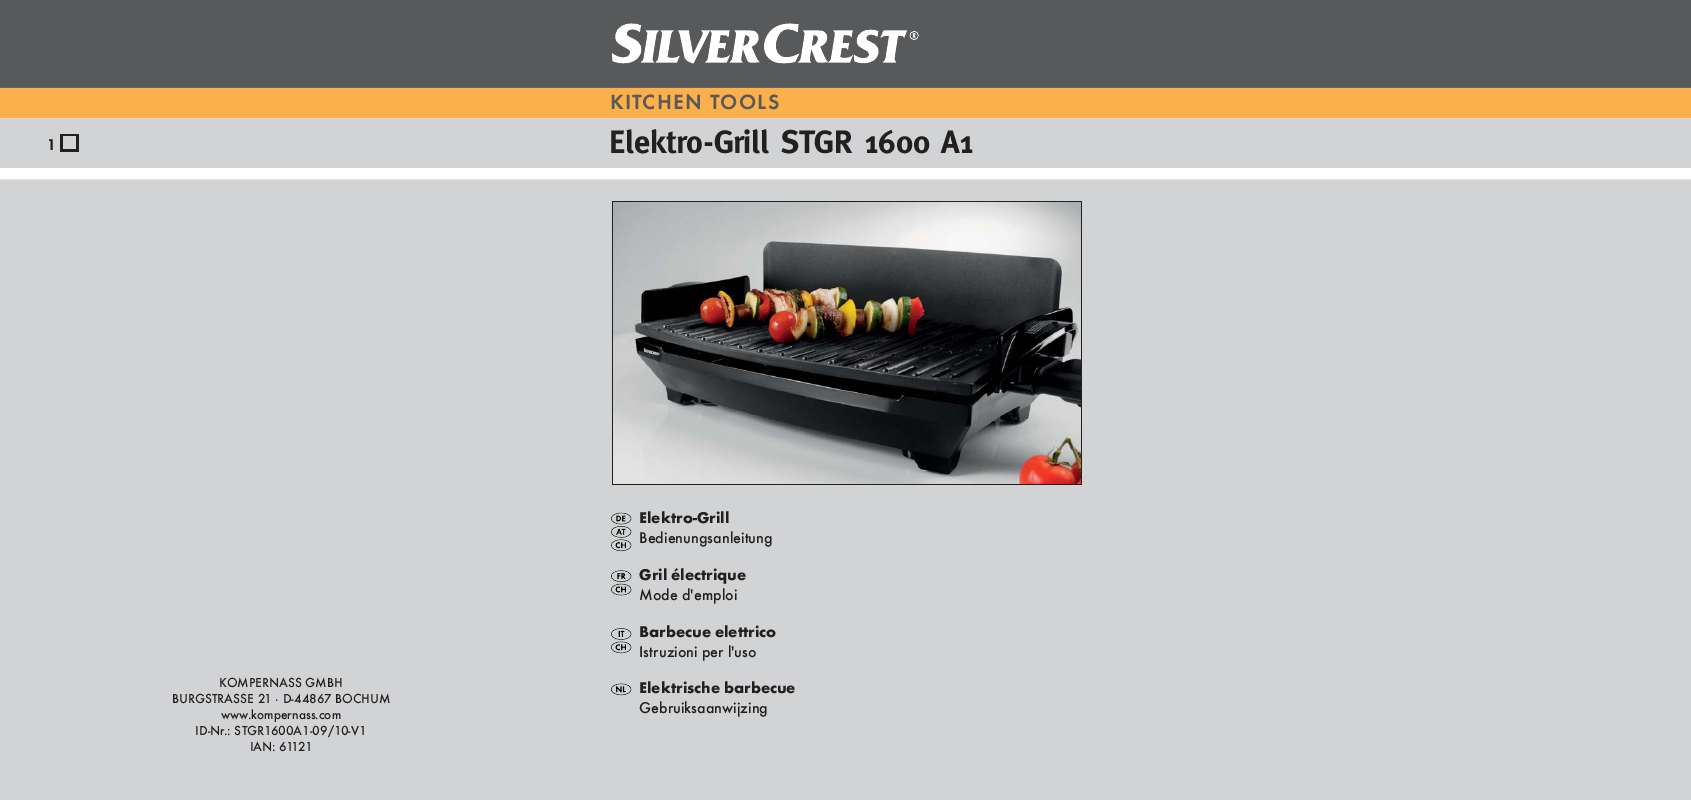 Guide utilisation  SILVERCREST STGR 1600 A1 ELECTRIC GRILL  de la marque SILVERCREST